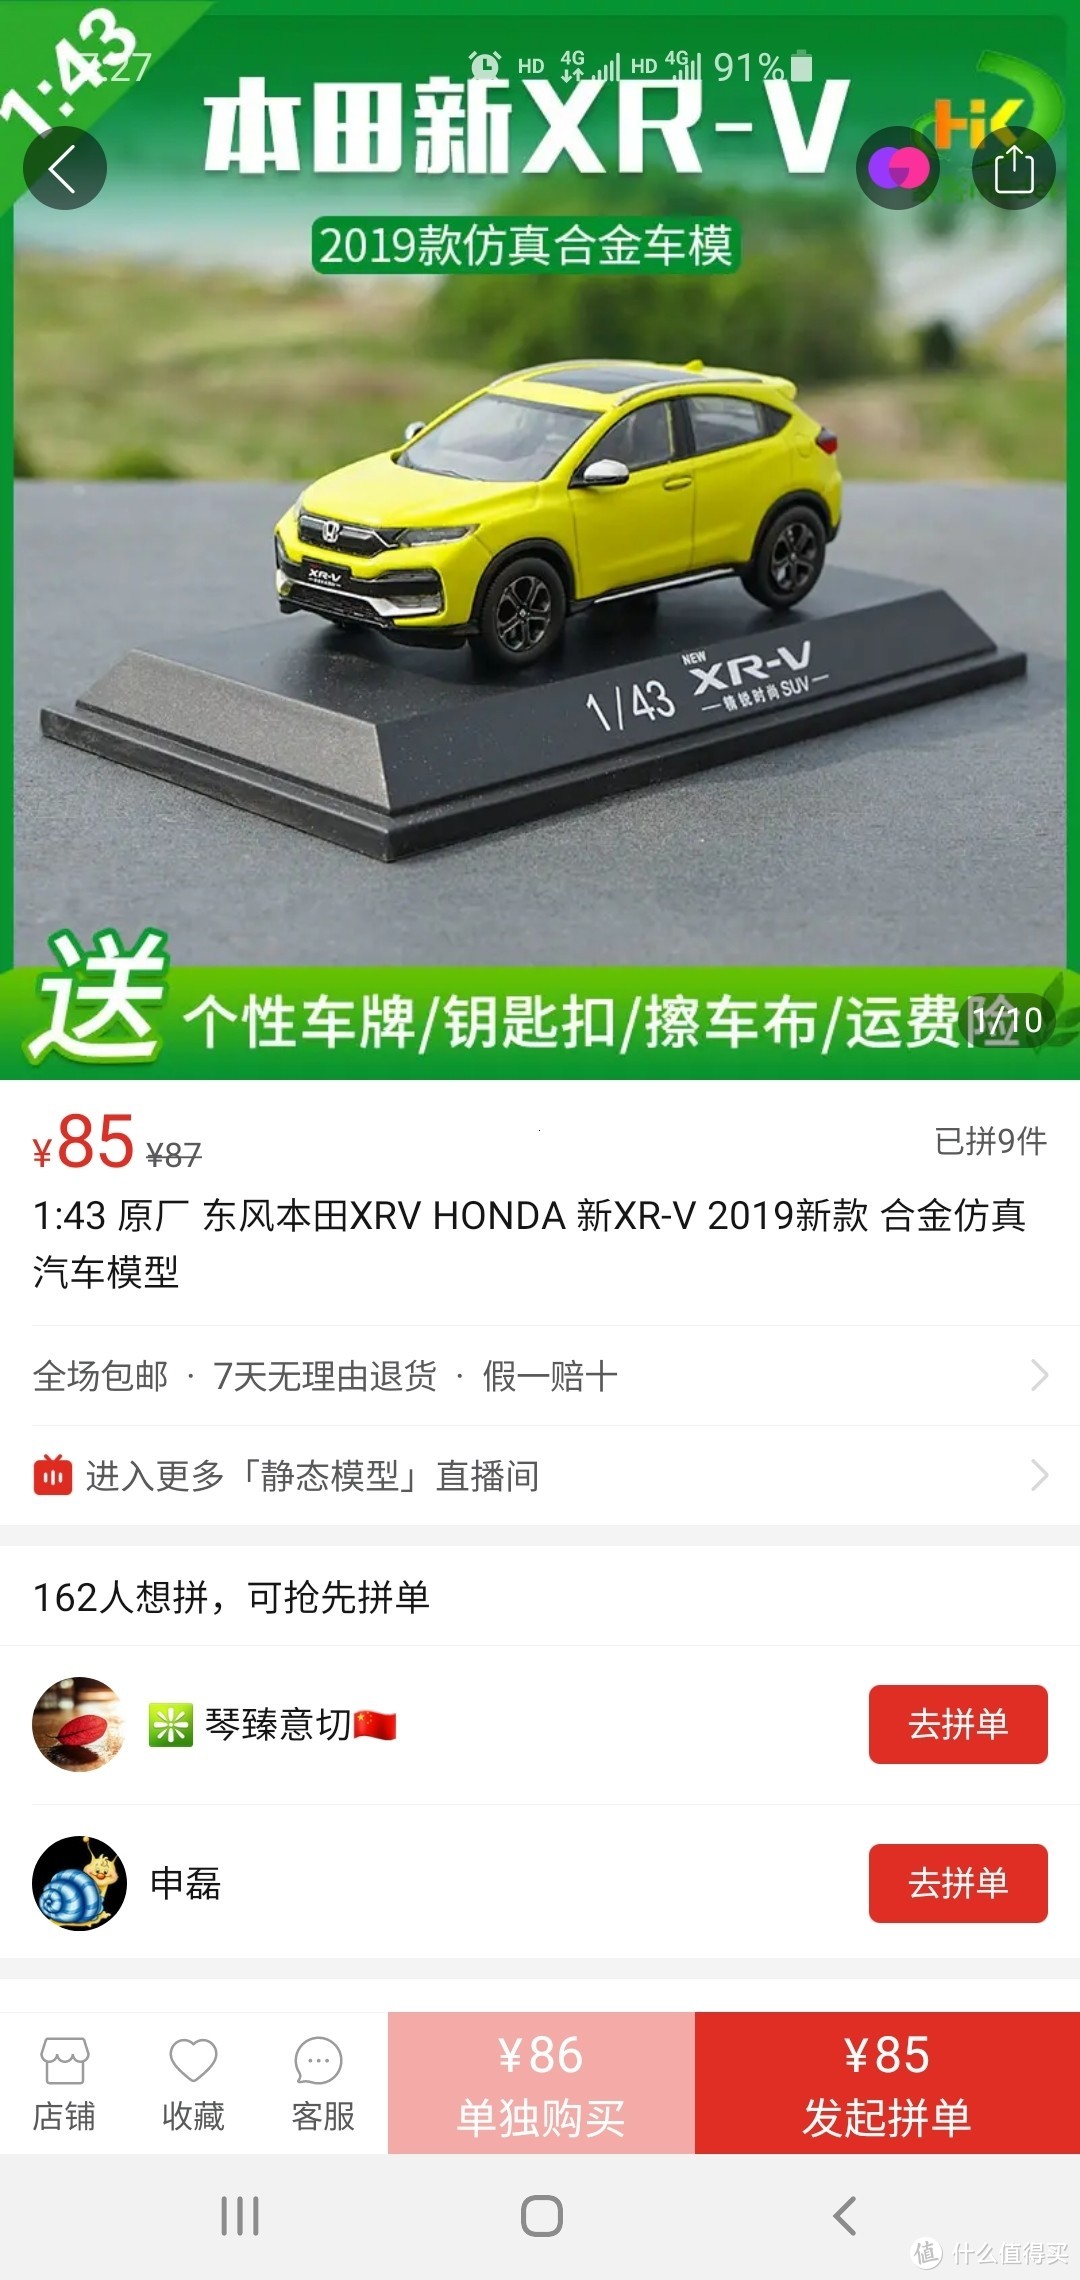 闲鱼40元淘的东风本田2019款xrv车模 1:43合金汽车模型 开箱